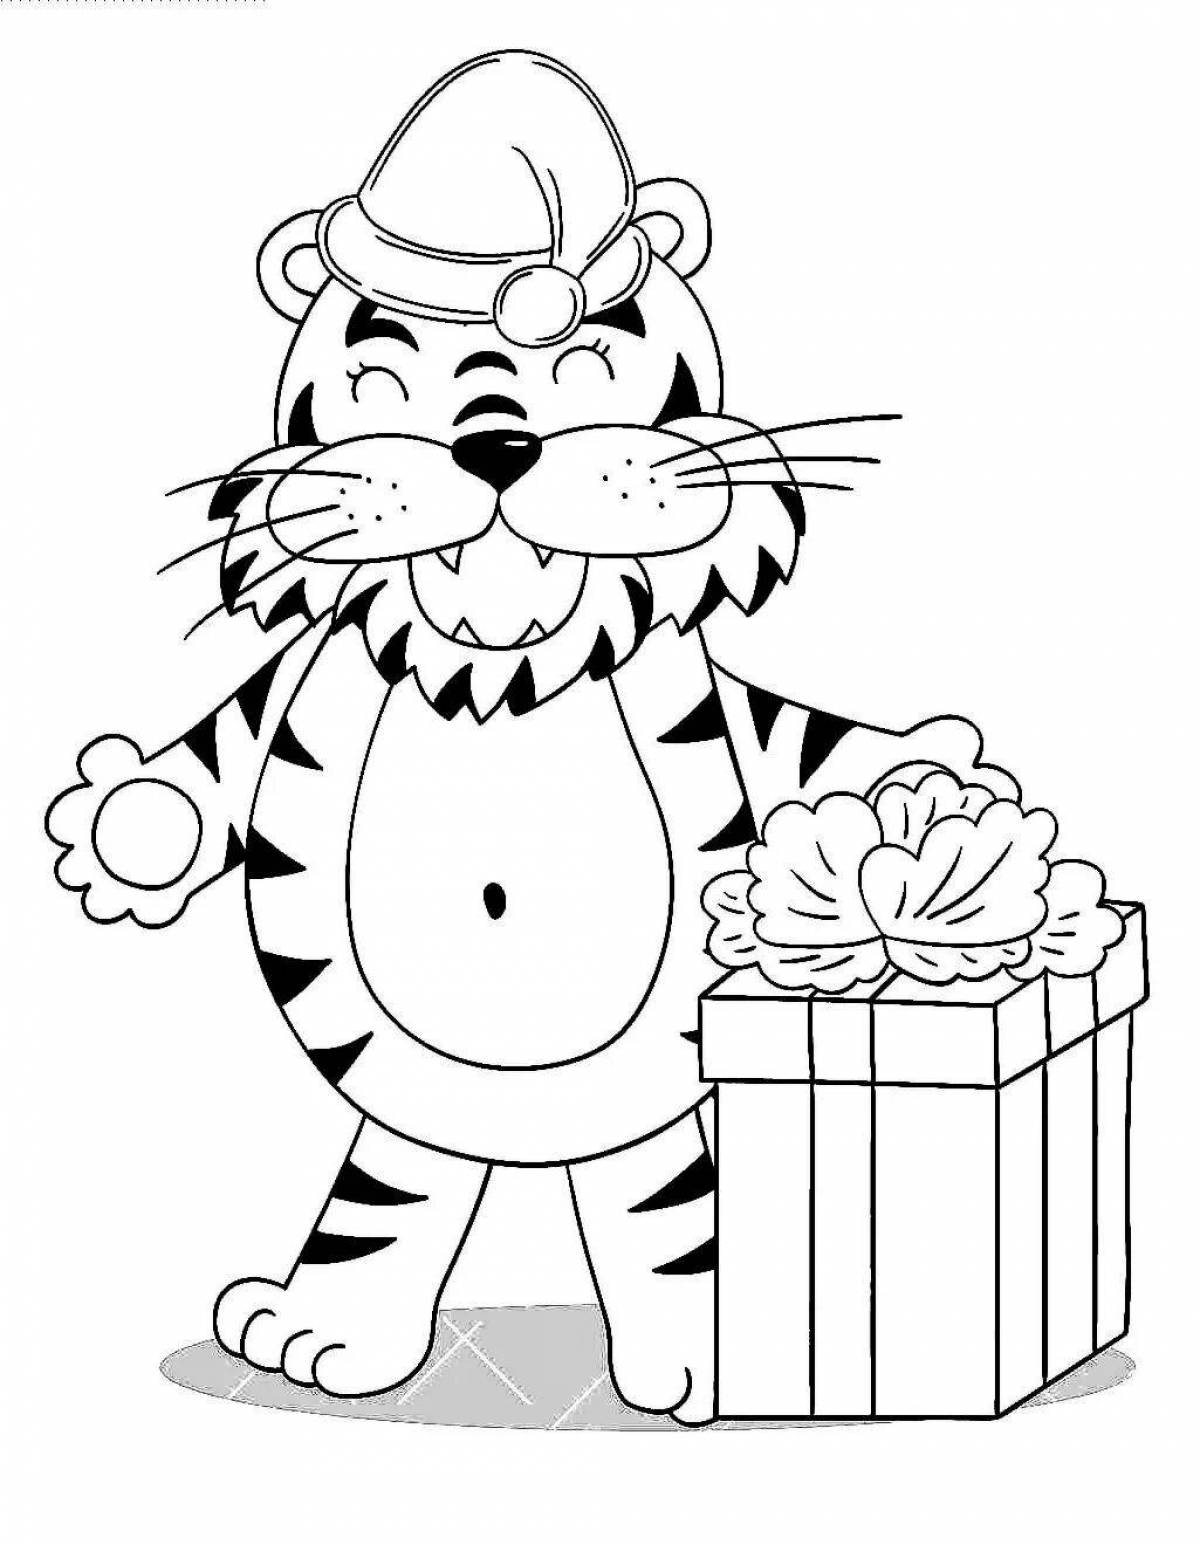 Радостный новогодний тигр